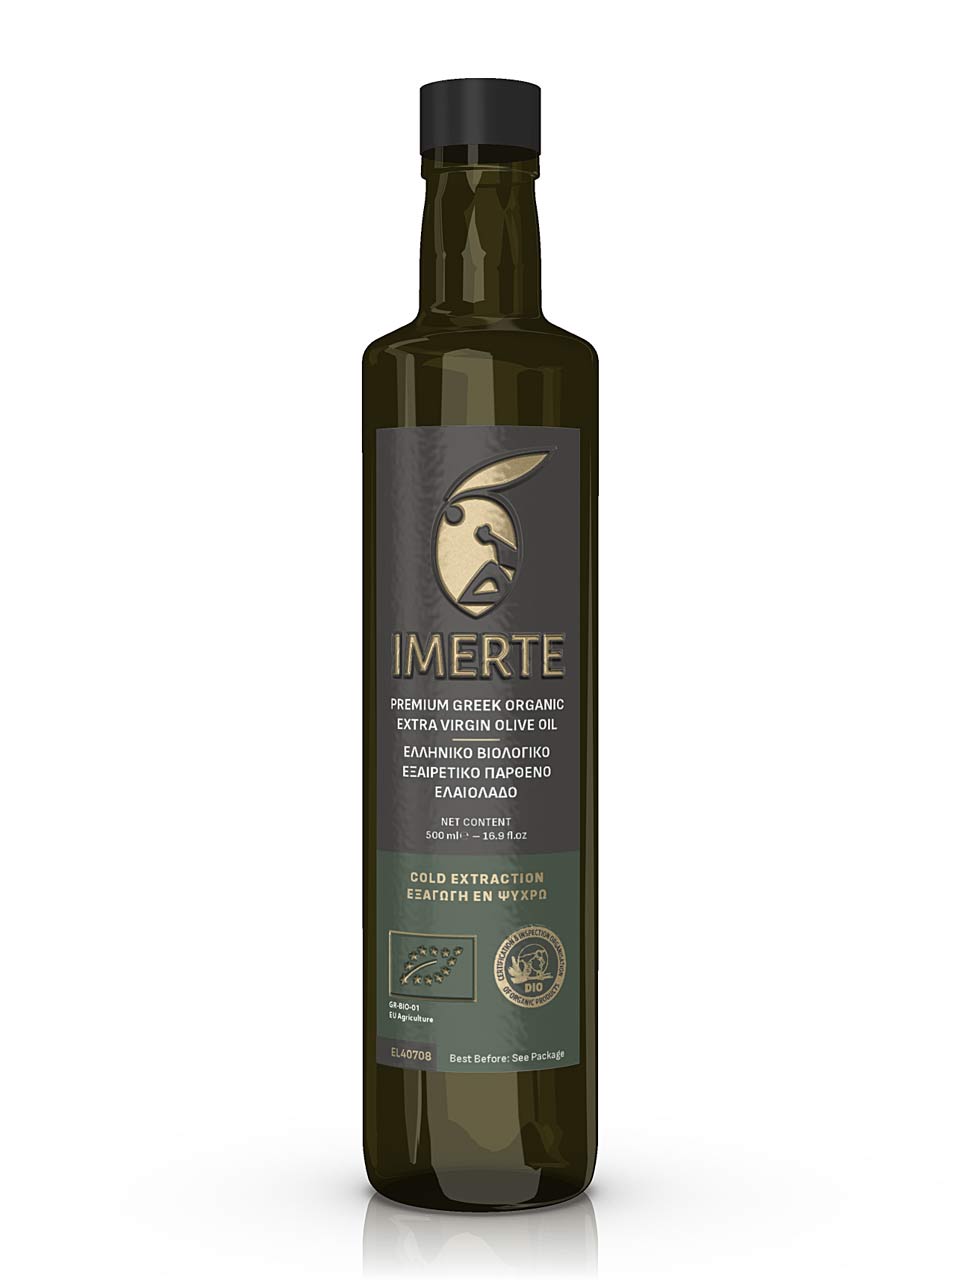 Bio Organic Olive Oil Label Design. NO IDEA. Branding Graphic Design Agency